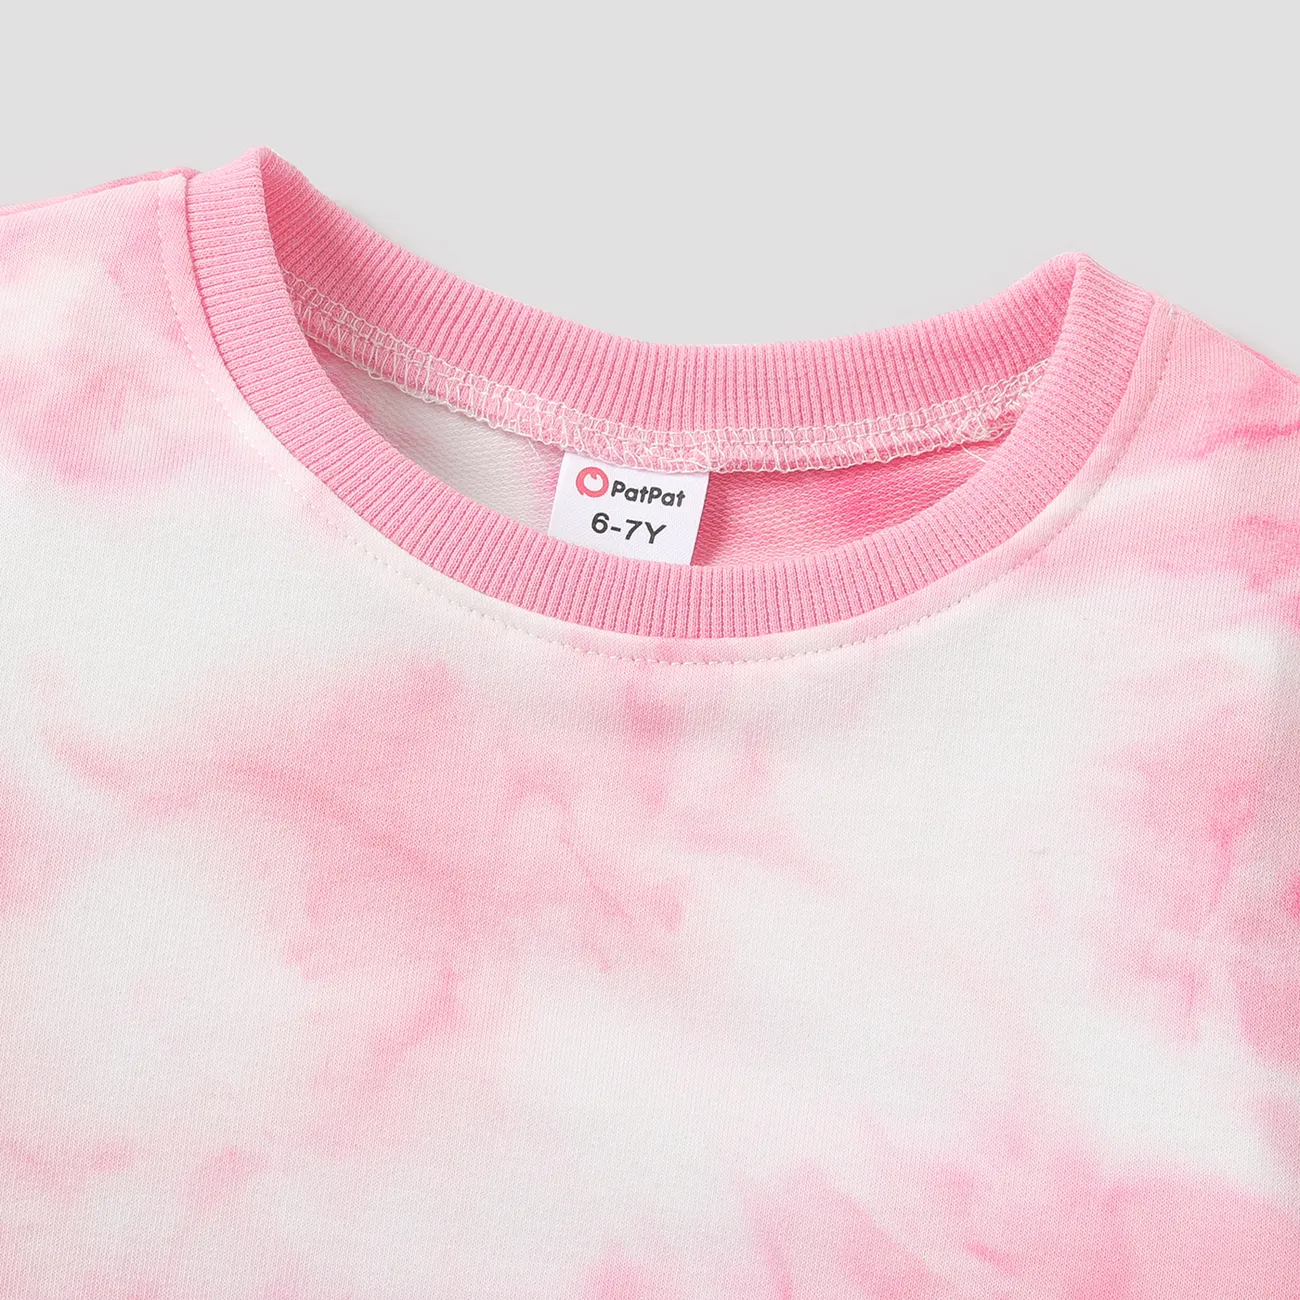 Enfants Unisexe Teinté par nouage Pull Sweat-shirt Rose big image 1